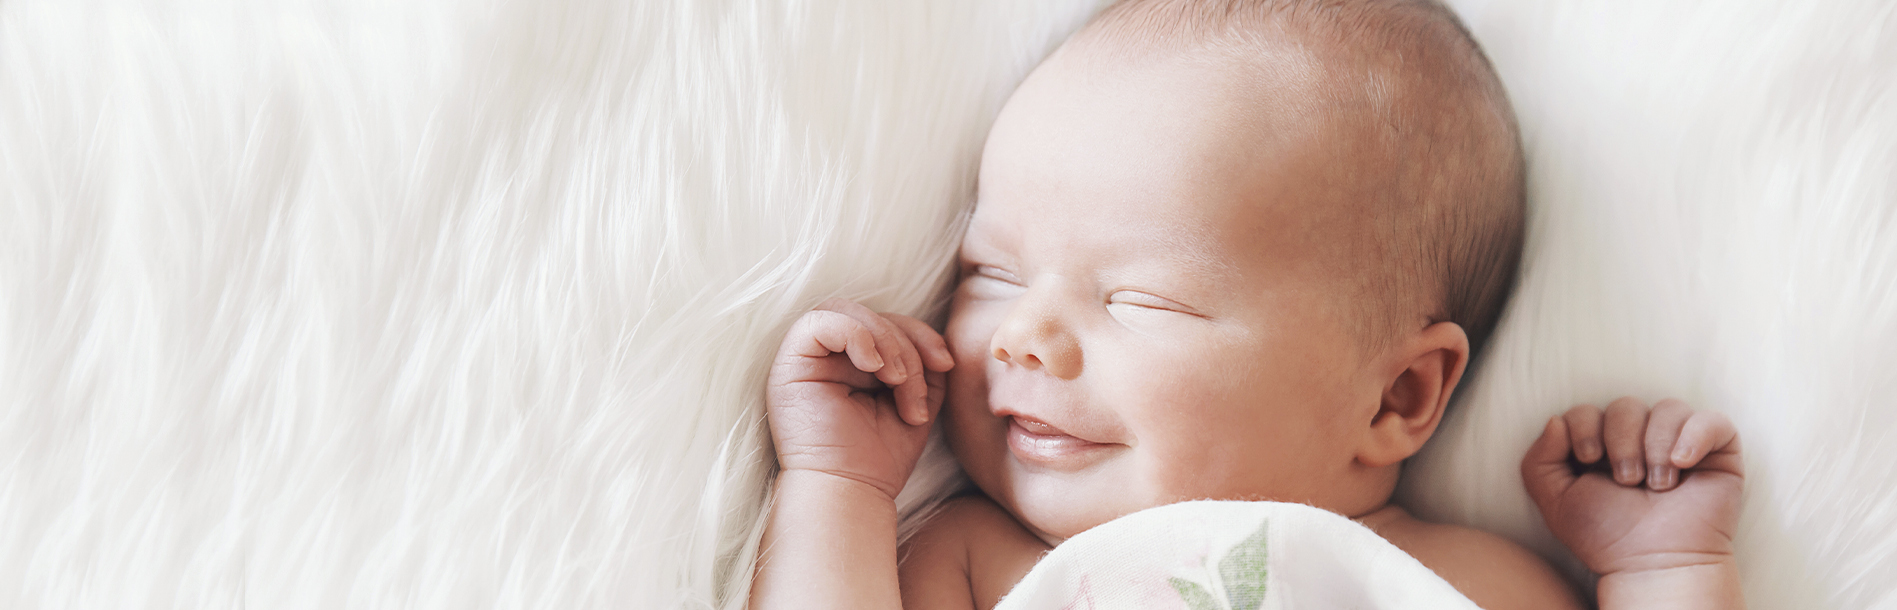 10 cuidados essenciais para se ter com o bebê recém-nascido